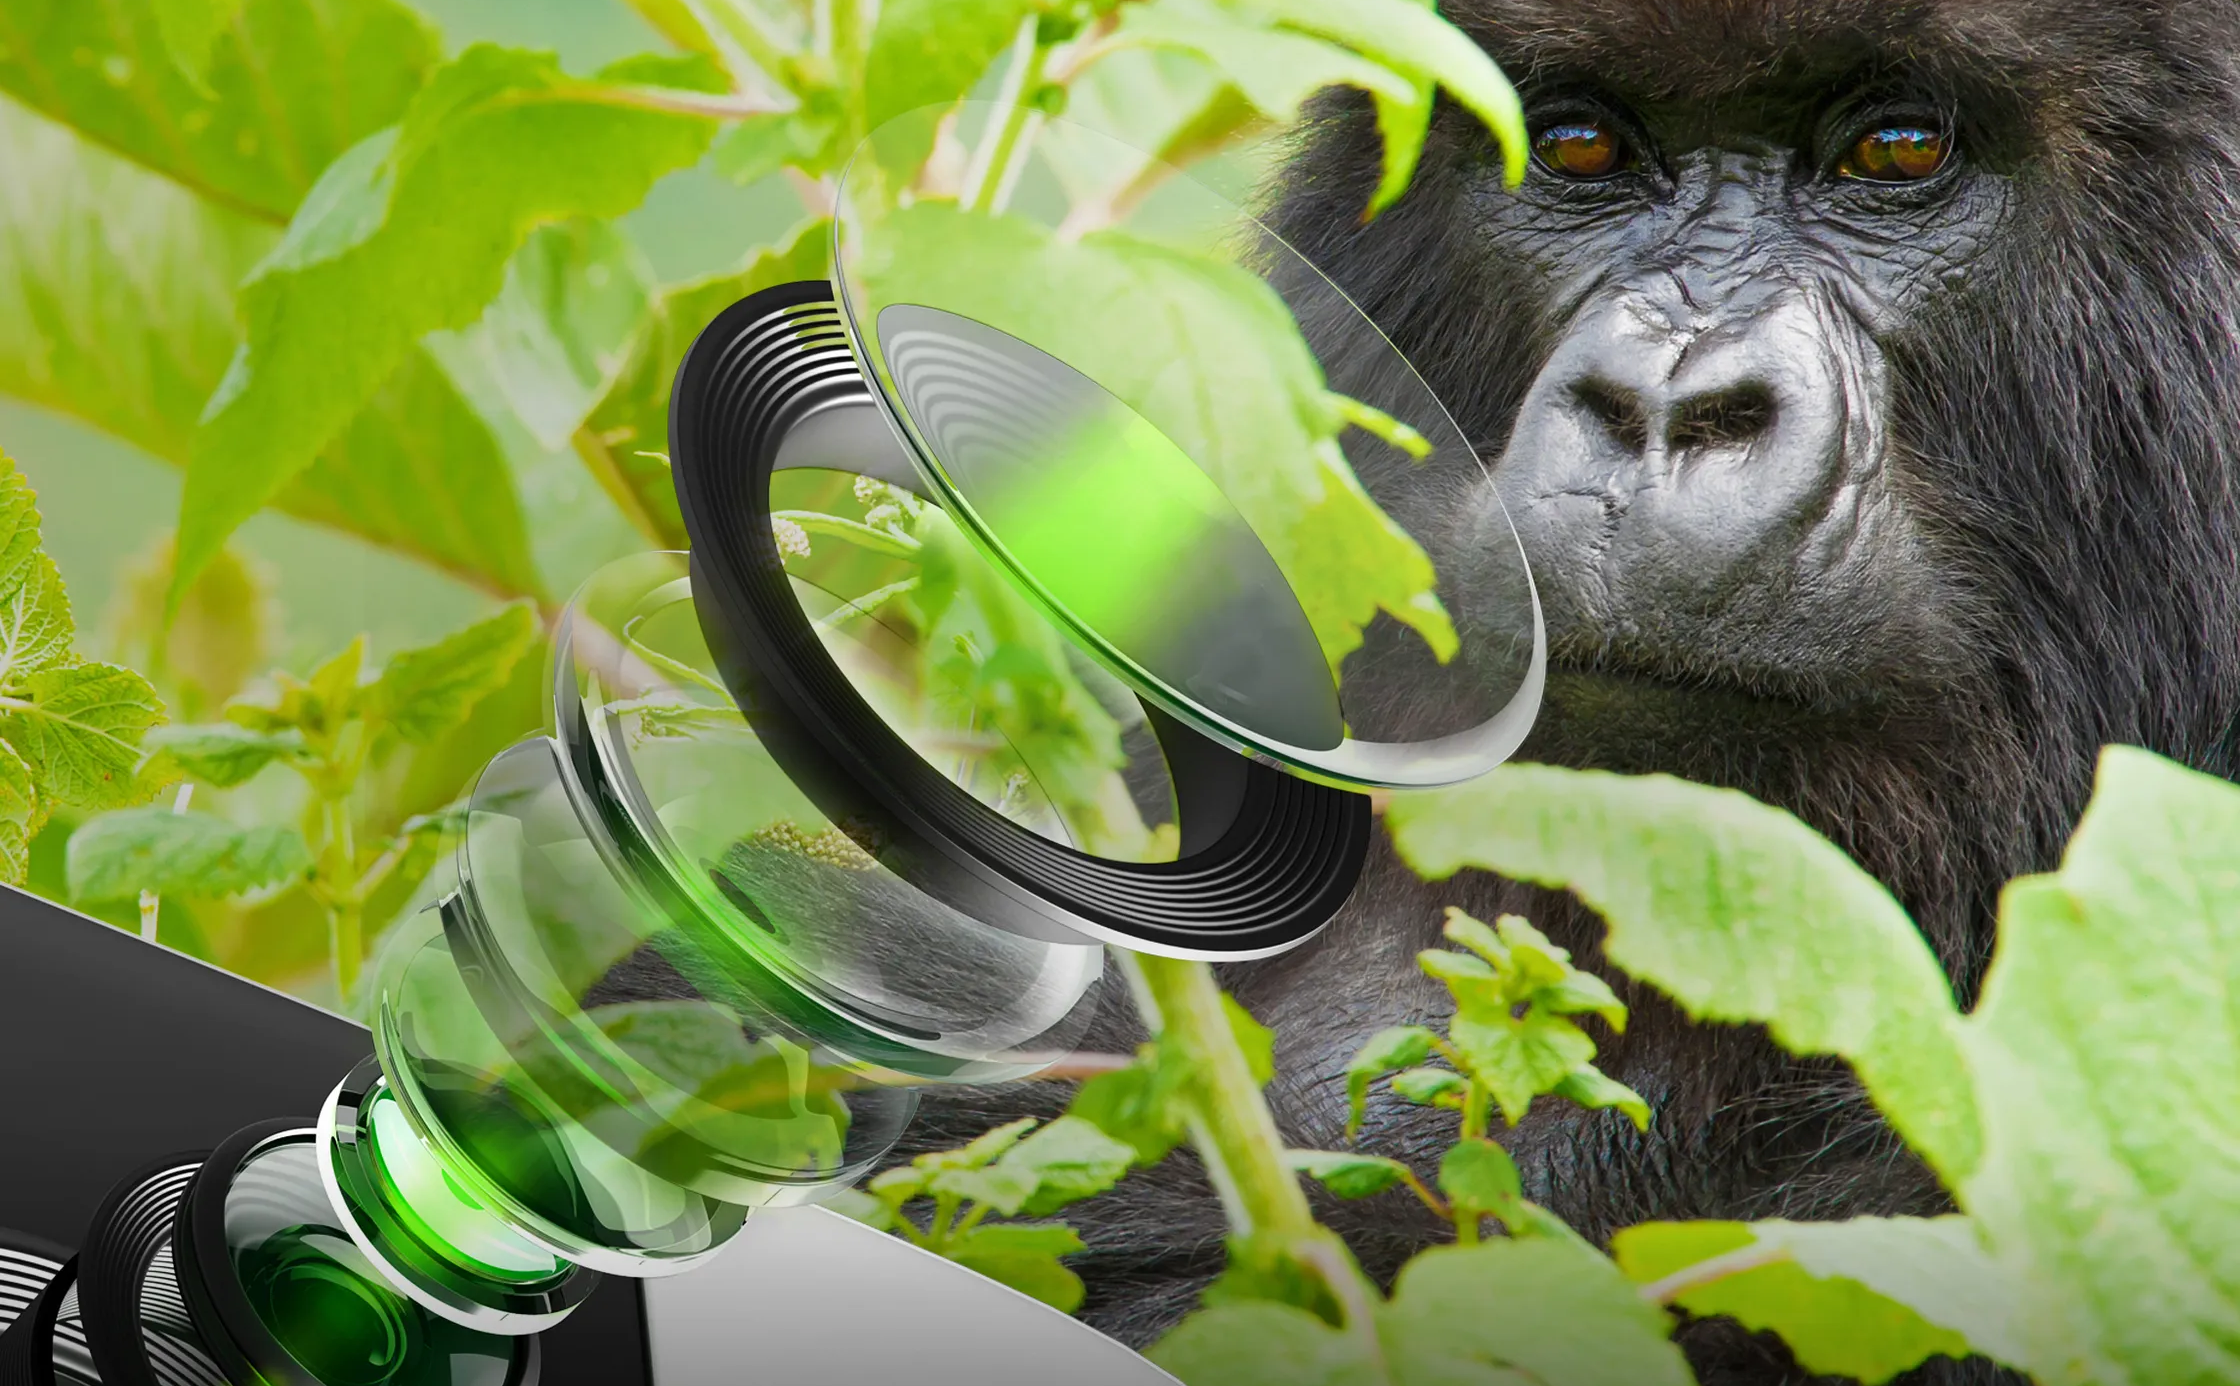 Corning giới thiệu kính Gorilla Glass riêng cho camera điện thoại